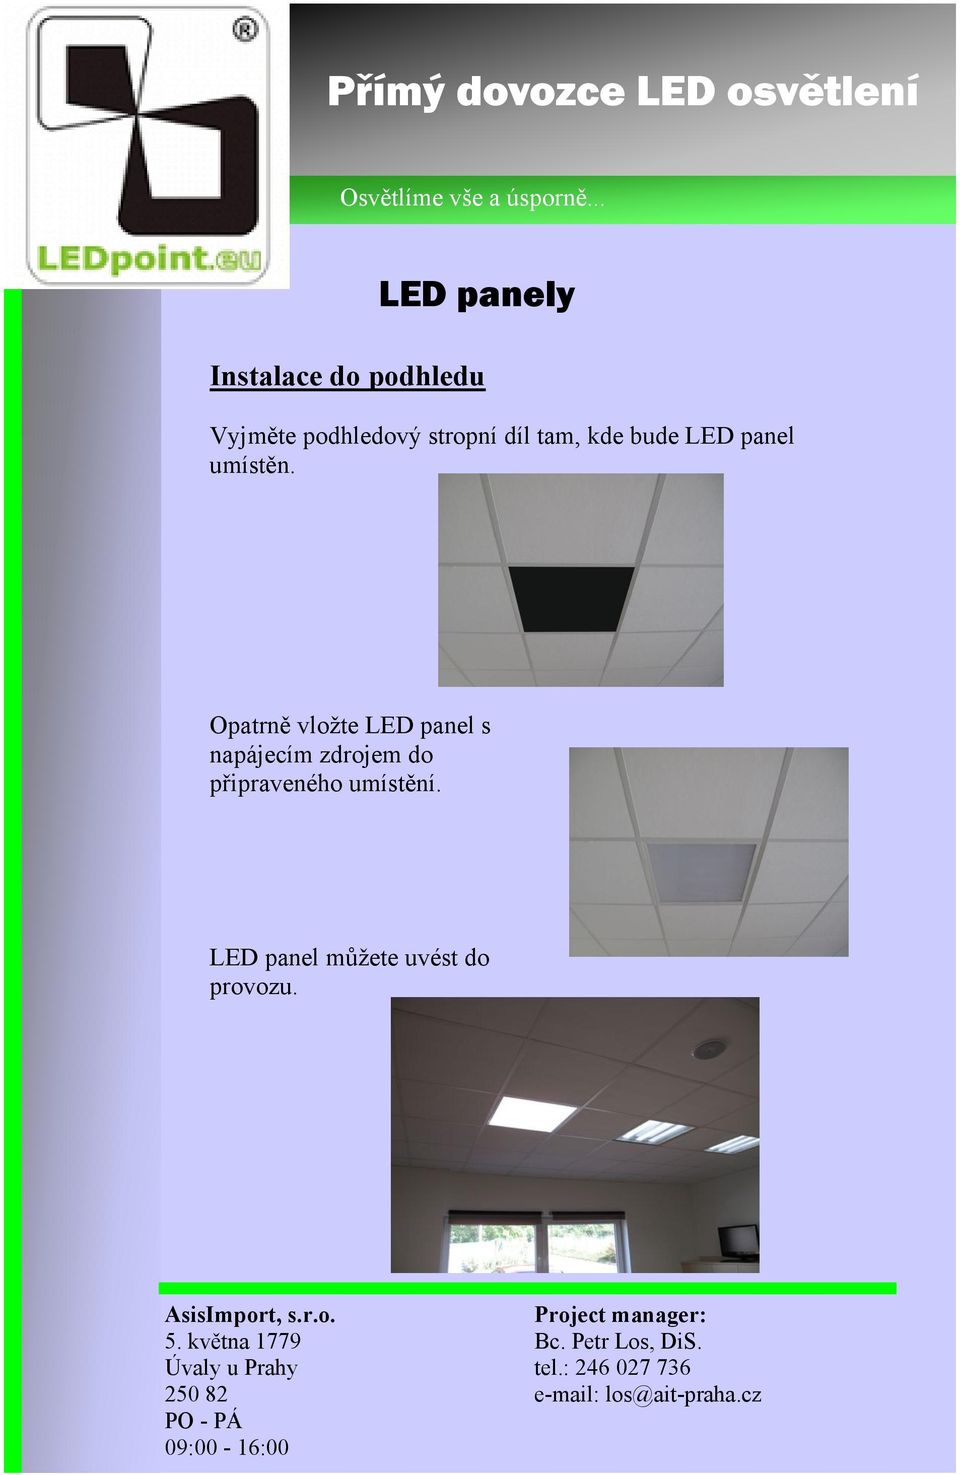 Opatrně vložte LED panel s napájecím zdrojem do